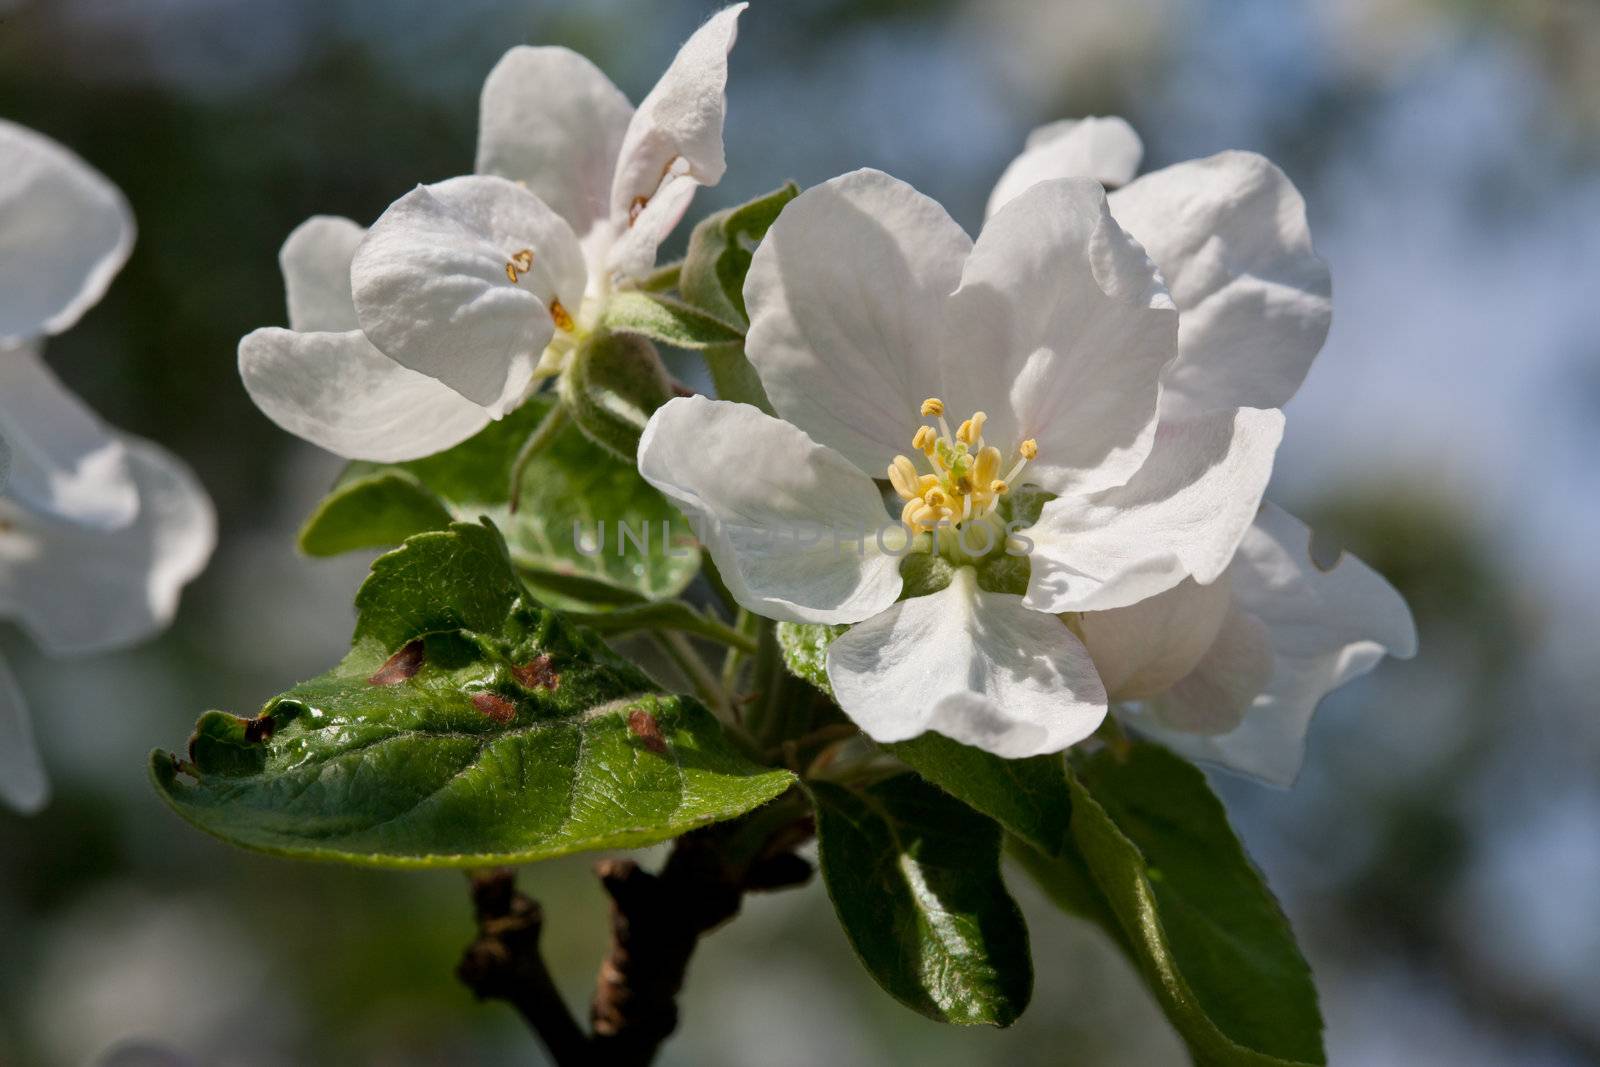 nature series: apple flower in spring season